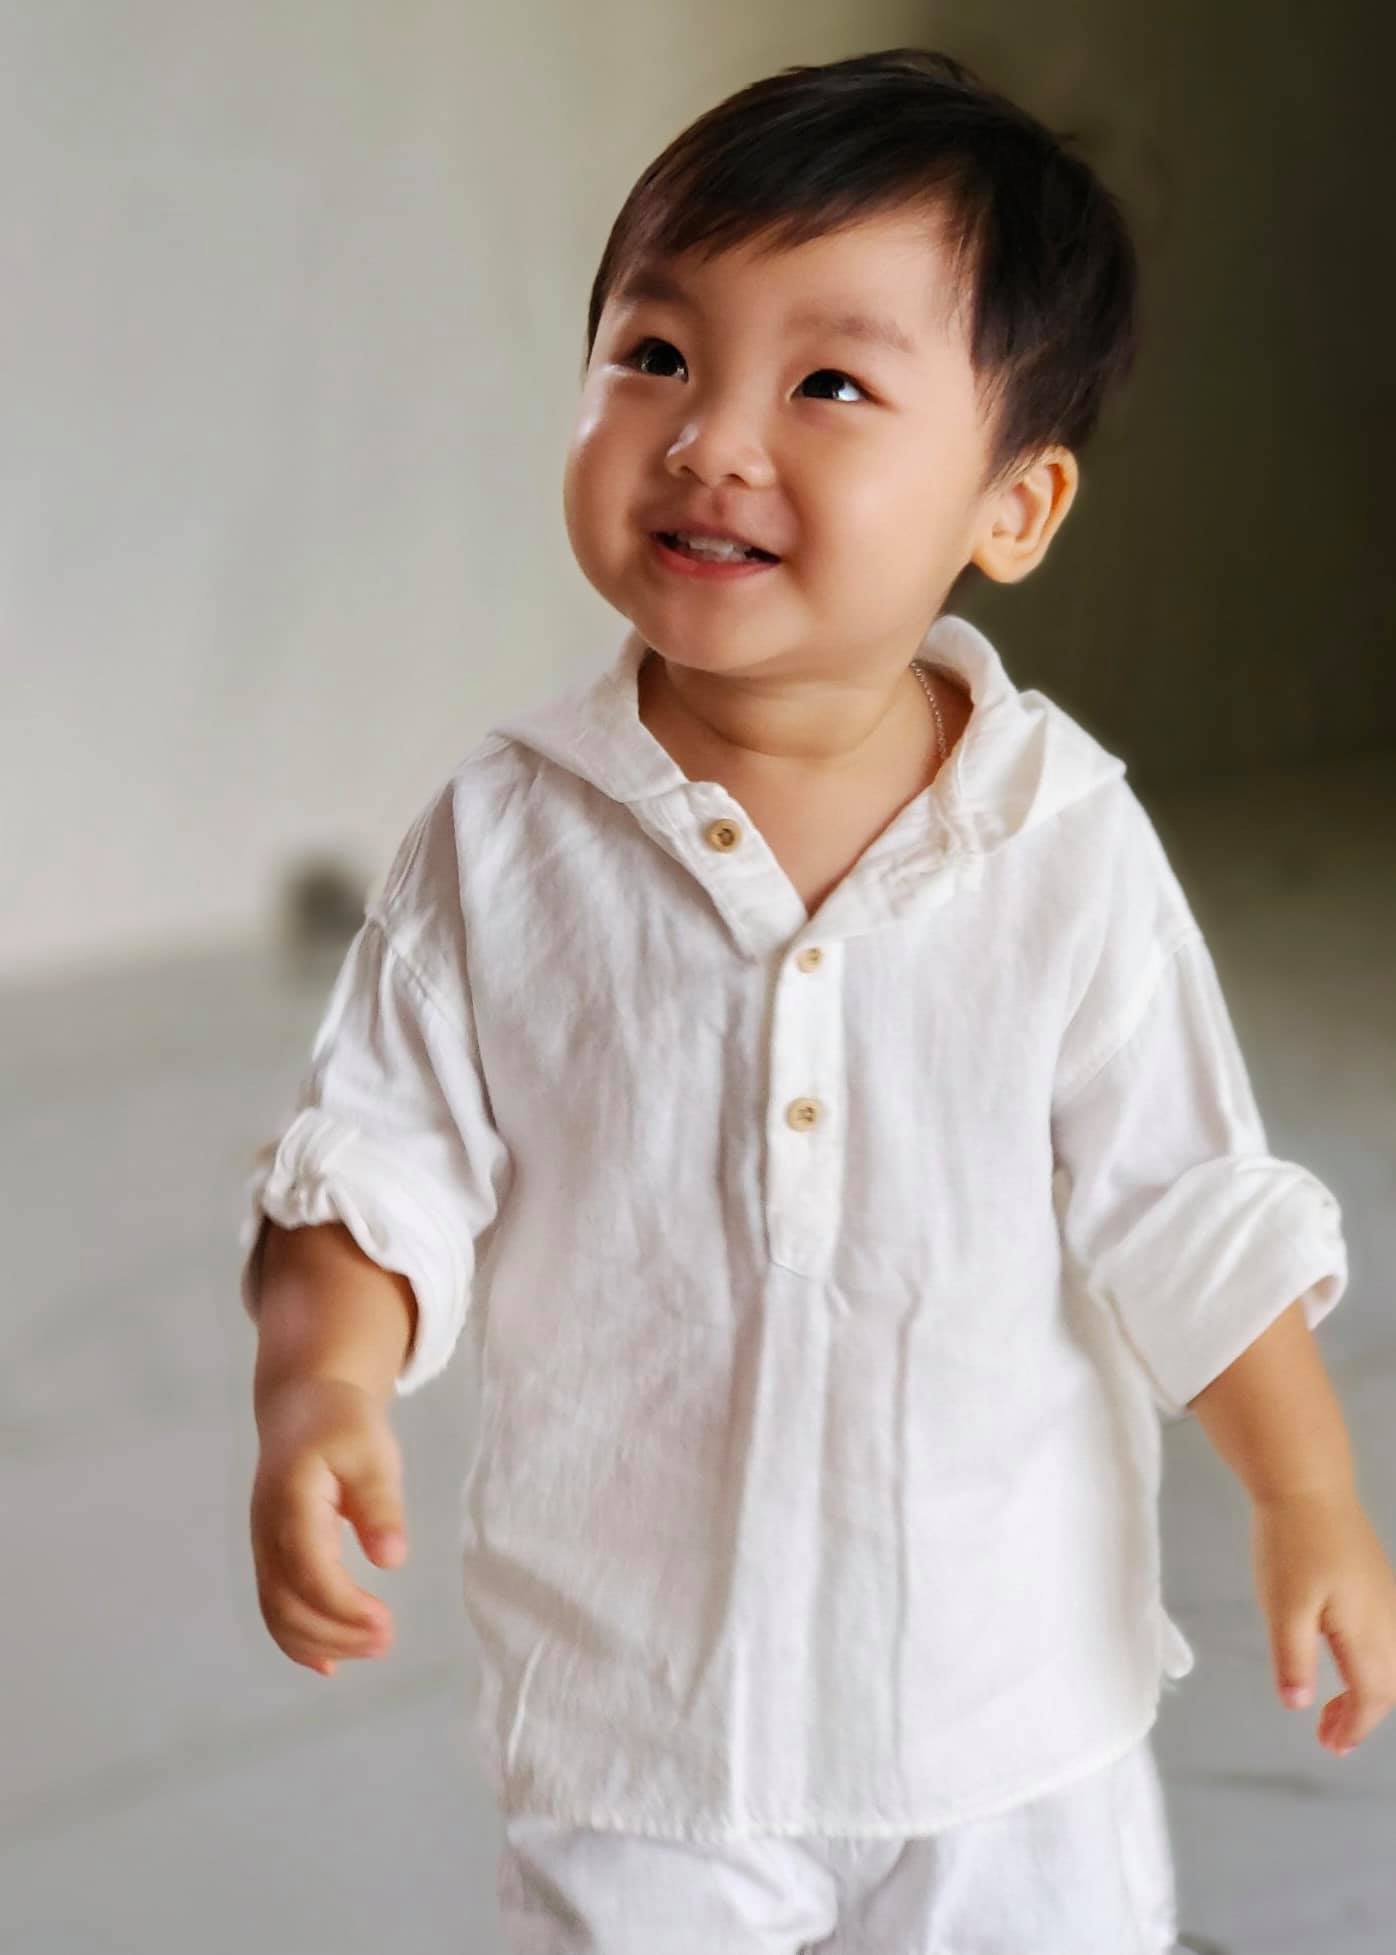 Dù chỉ mới 2 tuổi nhưng con trai nhà Hòa Minzy đã gây ấn tượng với lối nói chuyện thông minh cùng gương mặt bầu bĩnh, lém lỉnh được thừa hưởng nét đẹp từ cả mẹ lẫn bố.